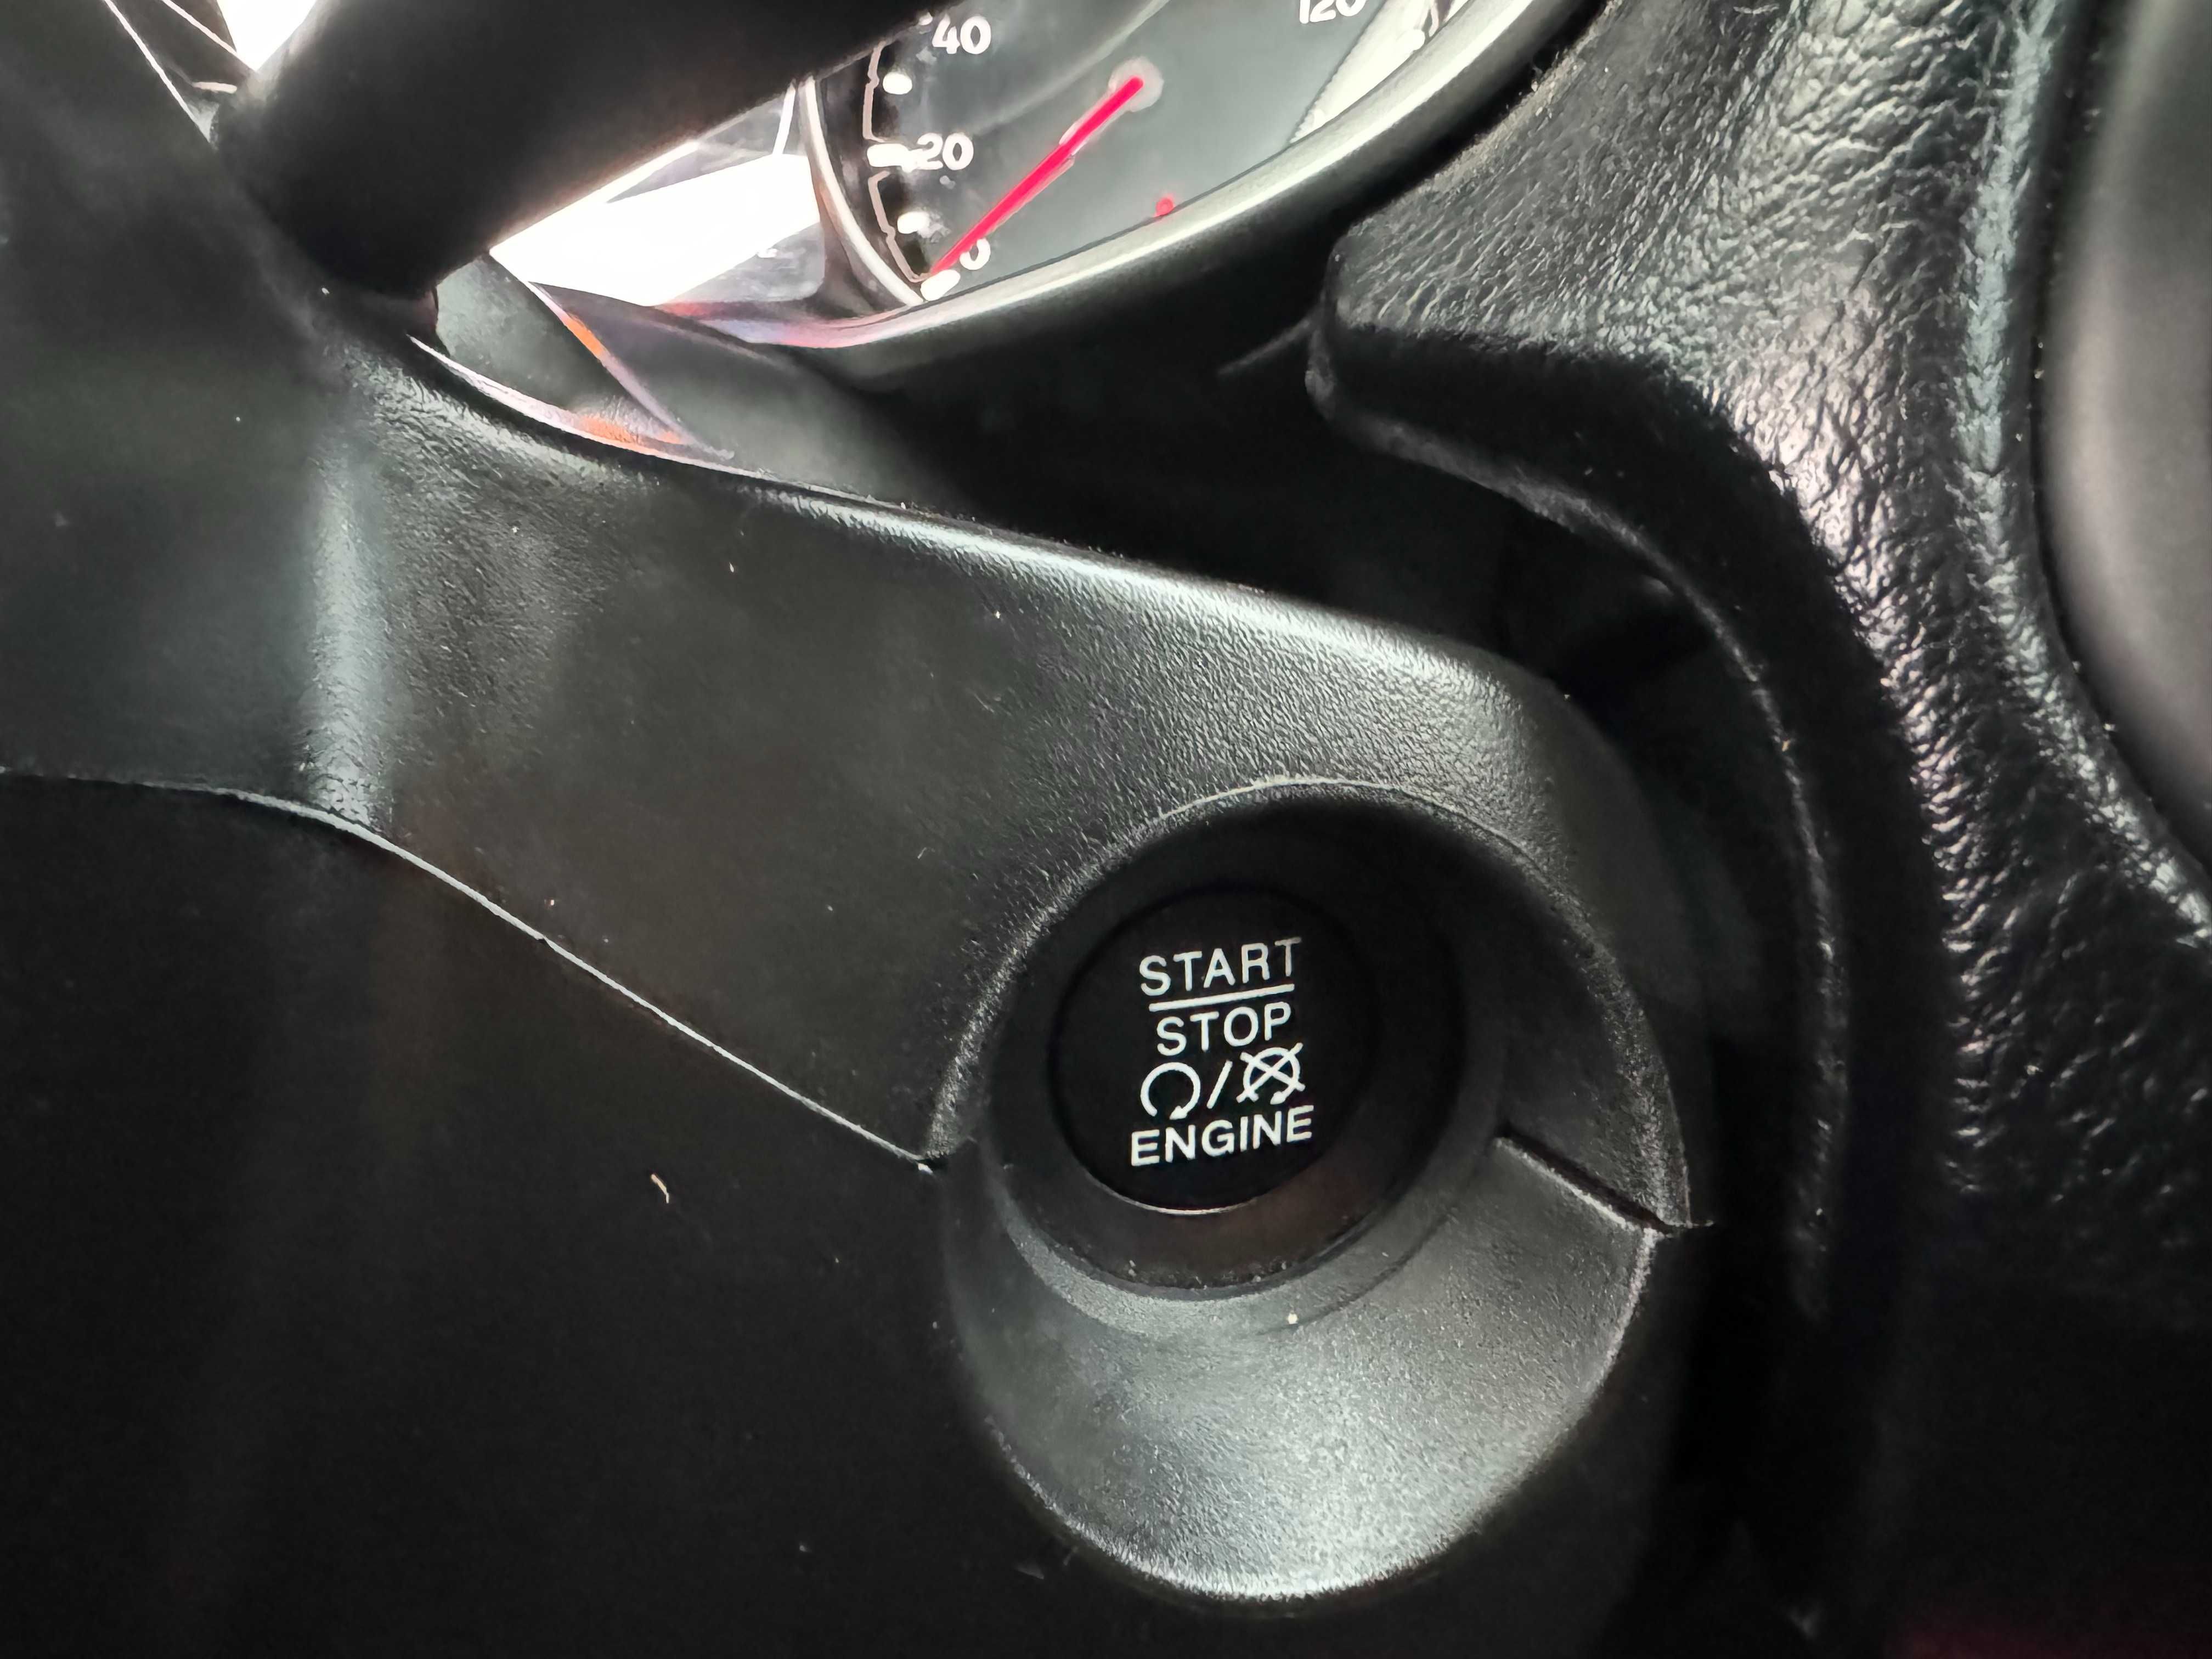 Jeep Compass 2018 року,  2.4 - бензин, повний привід.